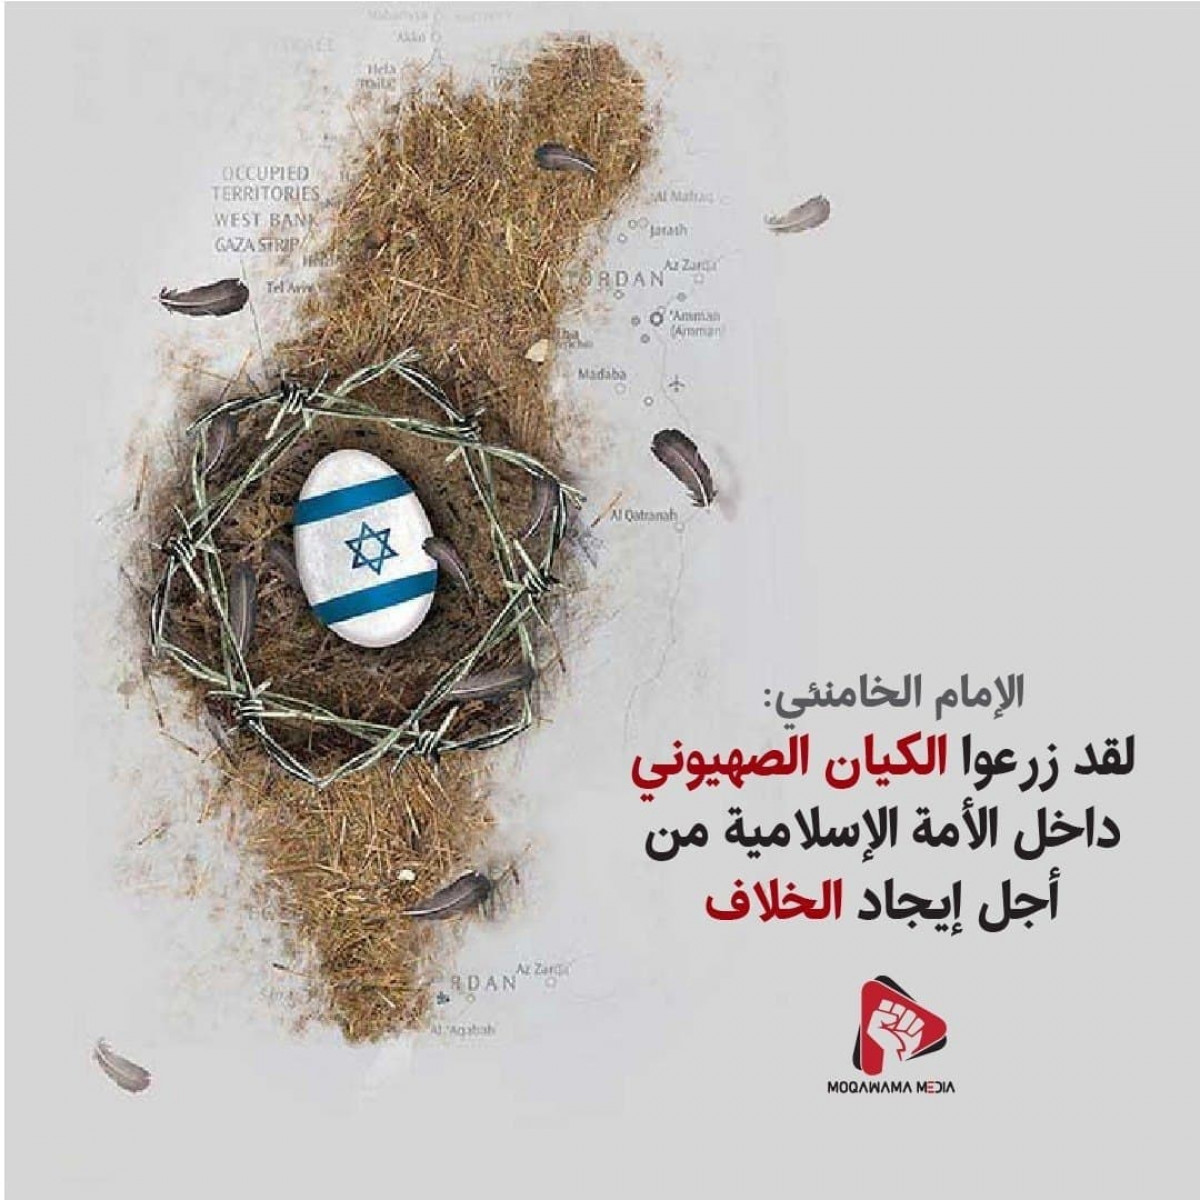 زرعوا الکیان الصهیوني داخل الأمة الإسلامیة